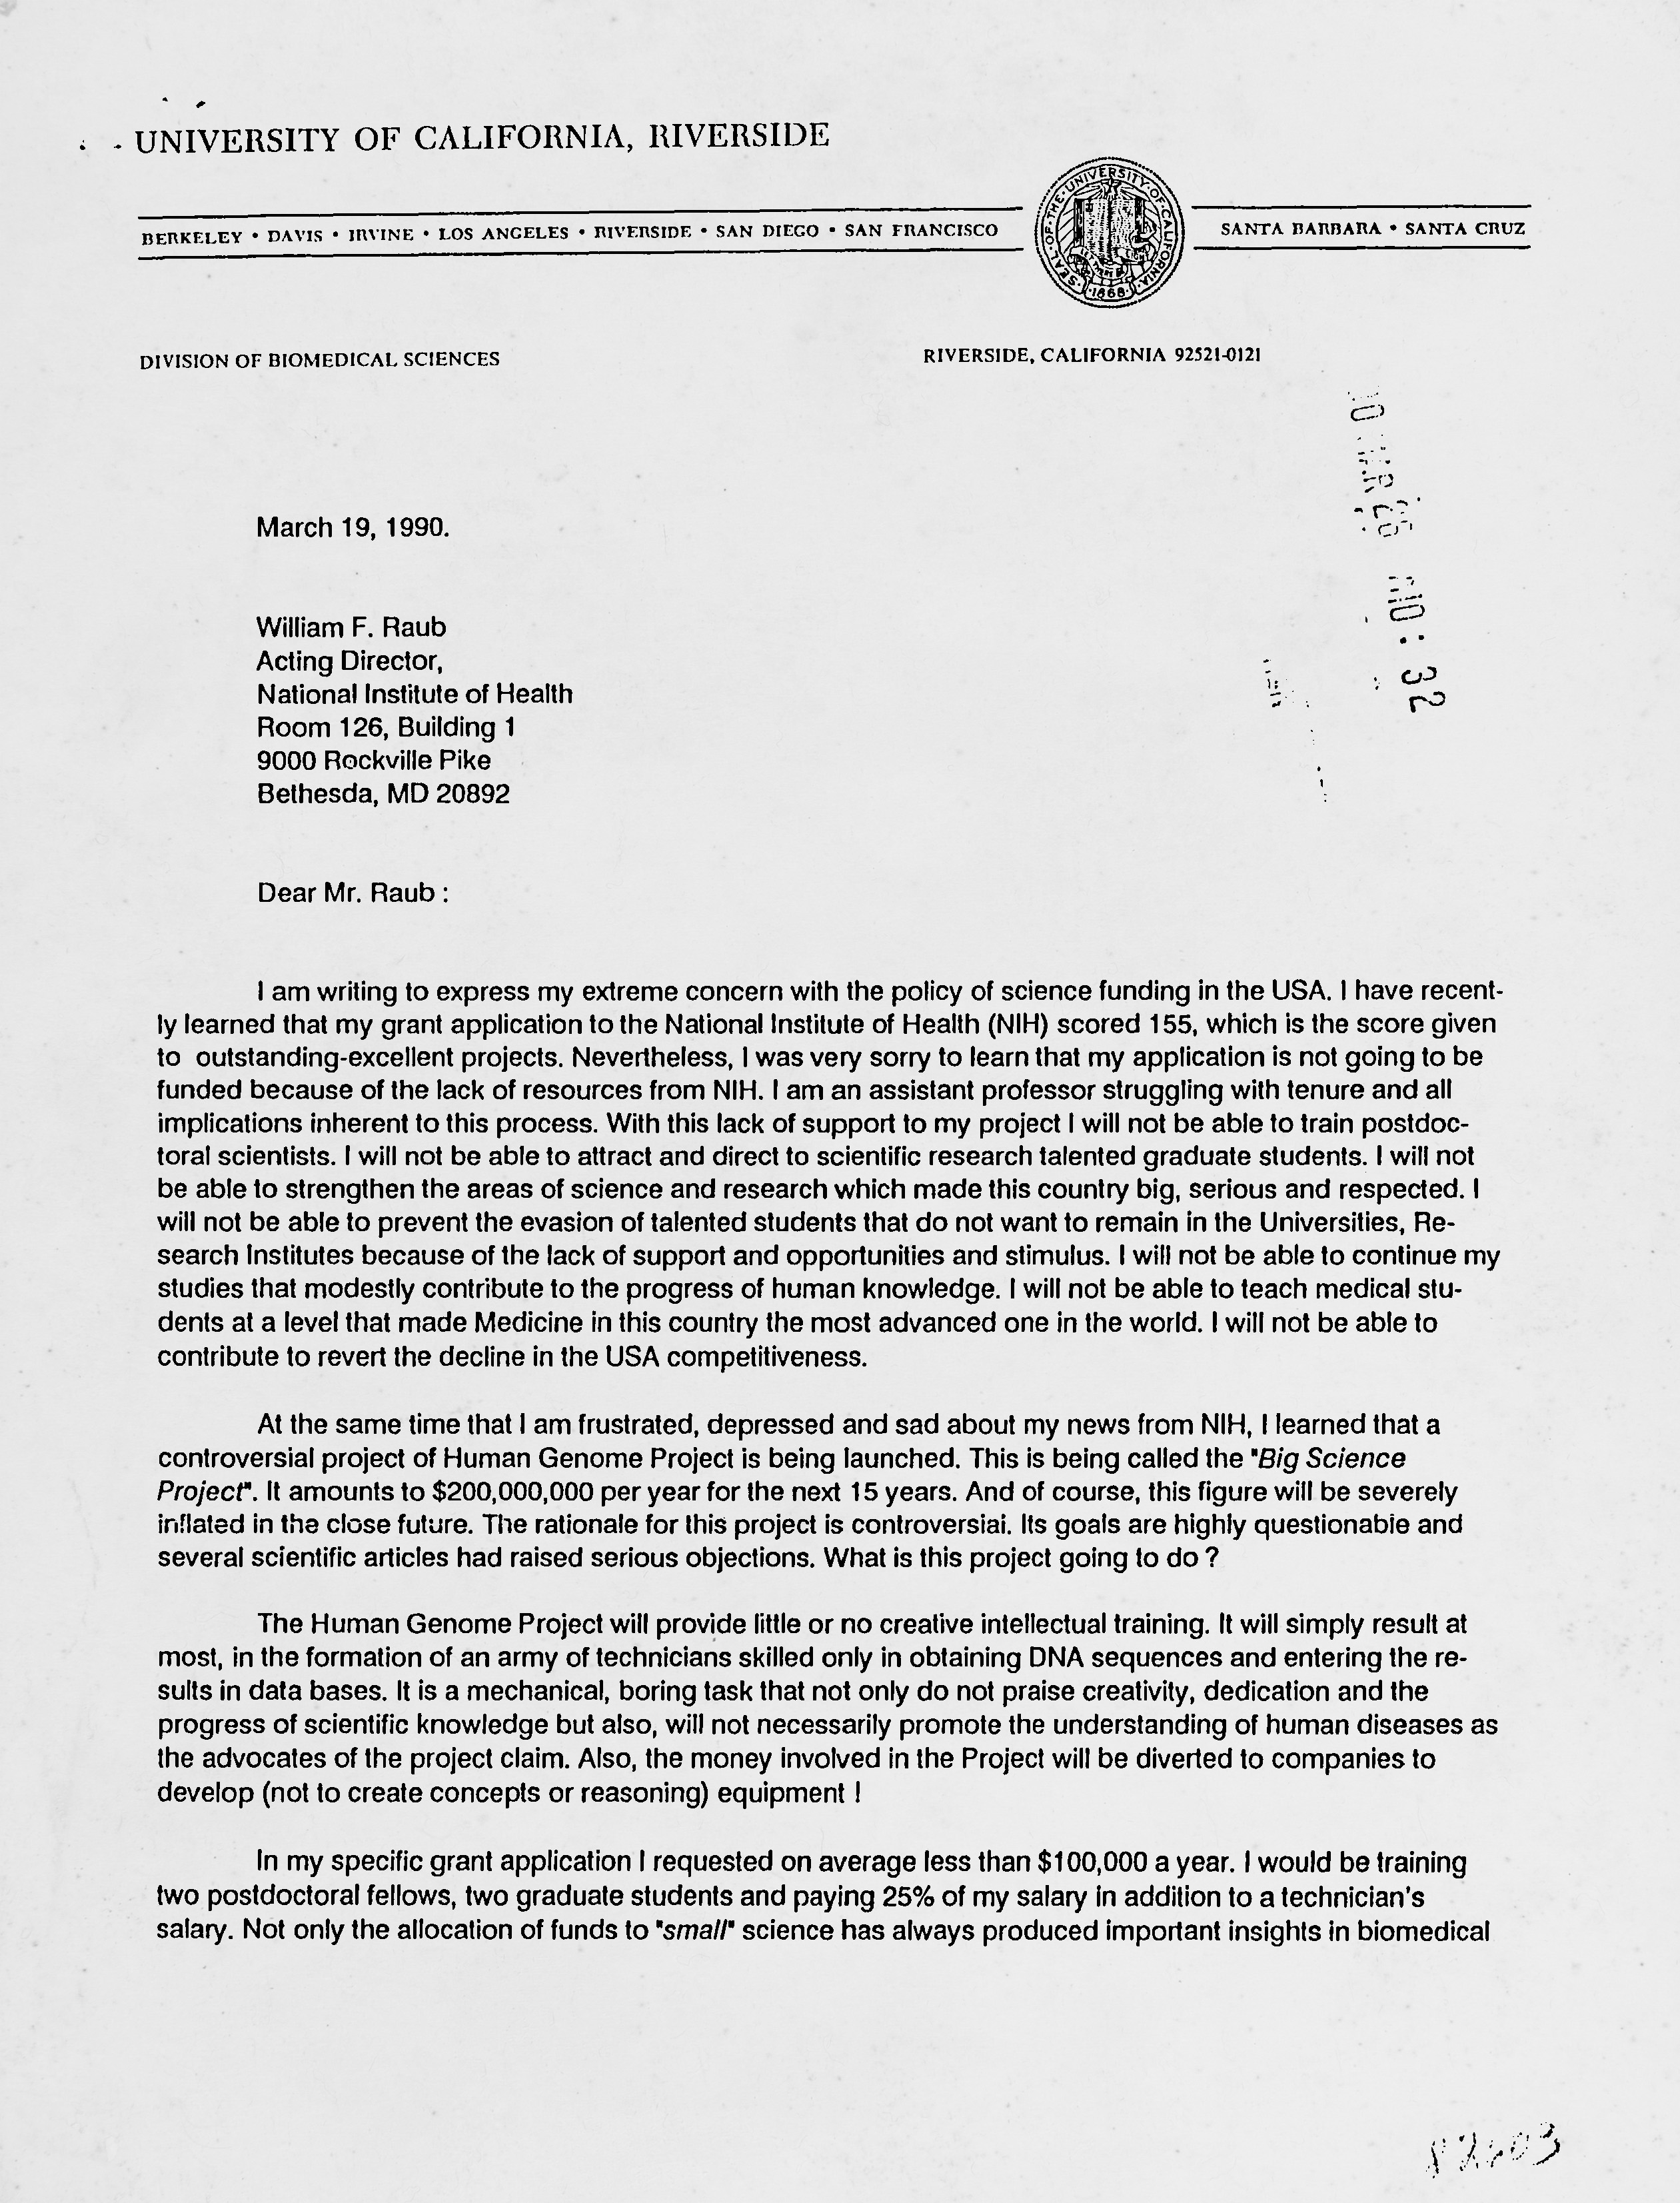 Anti-HGP Letter from Samuel Cuckierman